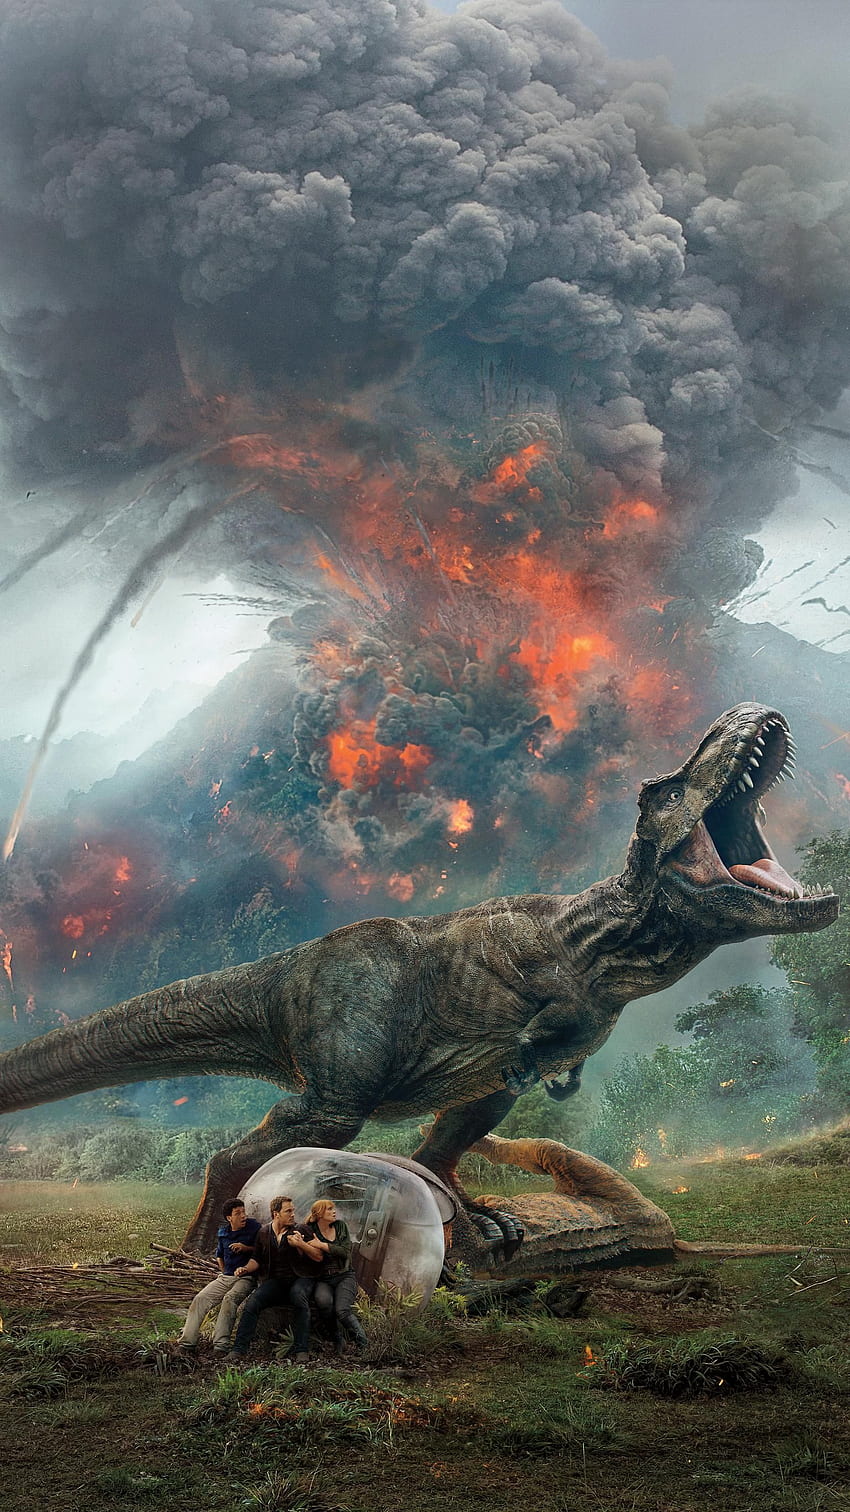 Jurassic World: Fallen Kingdom (2018) Teléfono. Cinemanía. Mundo jurásico, mundo del parque jurásico, cartel del mundo jurásico, arte del parque jurásico fondo de pantalla del teléfono